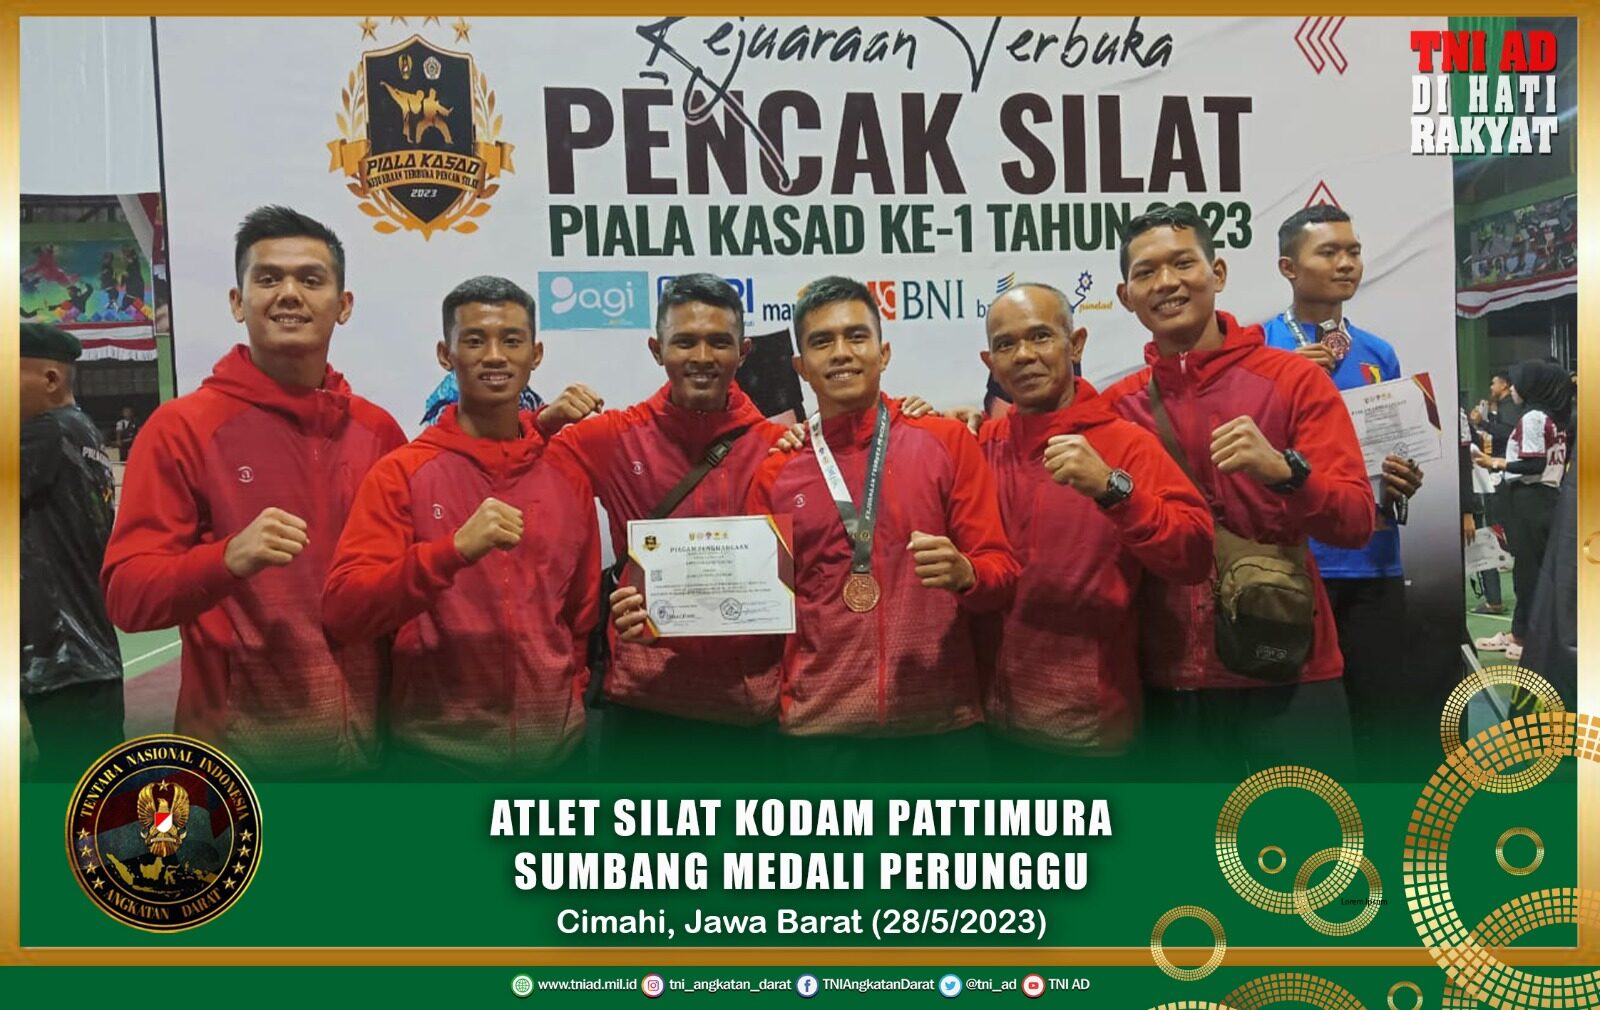 Atlet Silat Kodam Pattimura Sumbang Medali Perunggu